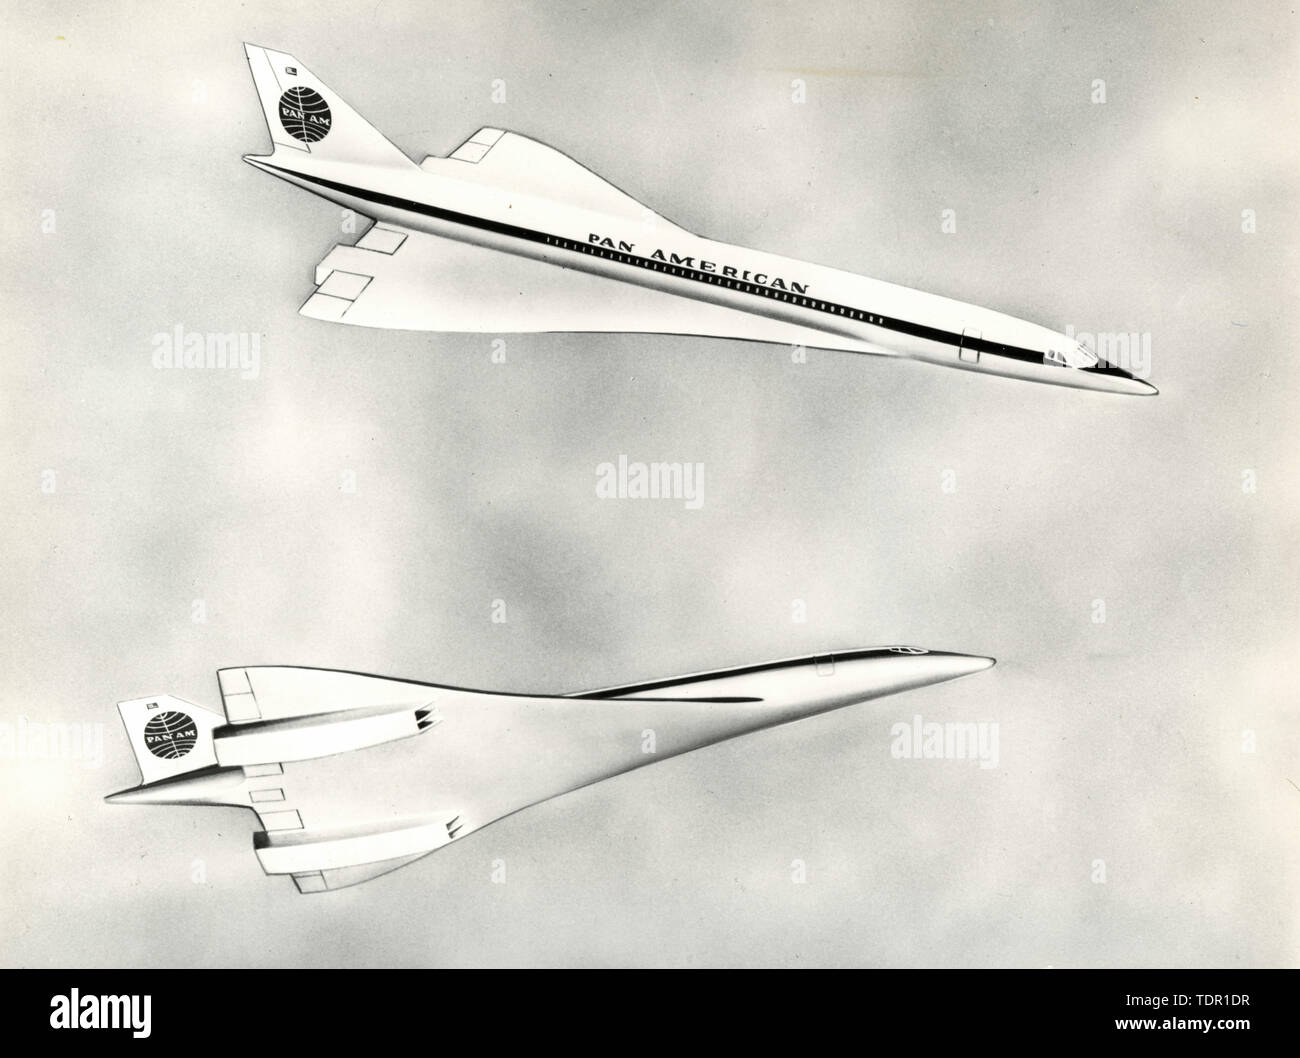 Concorde aereo Pan American, rendering artistica degli anni settanta Foto Stock